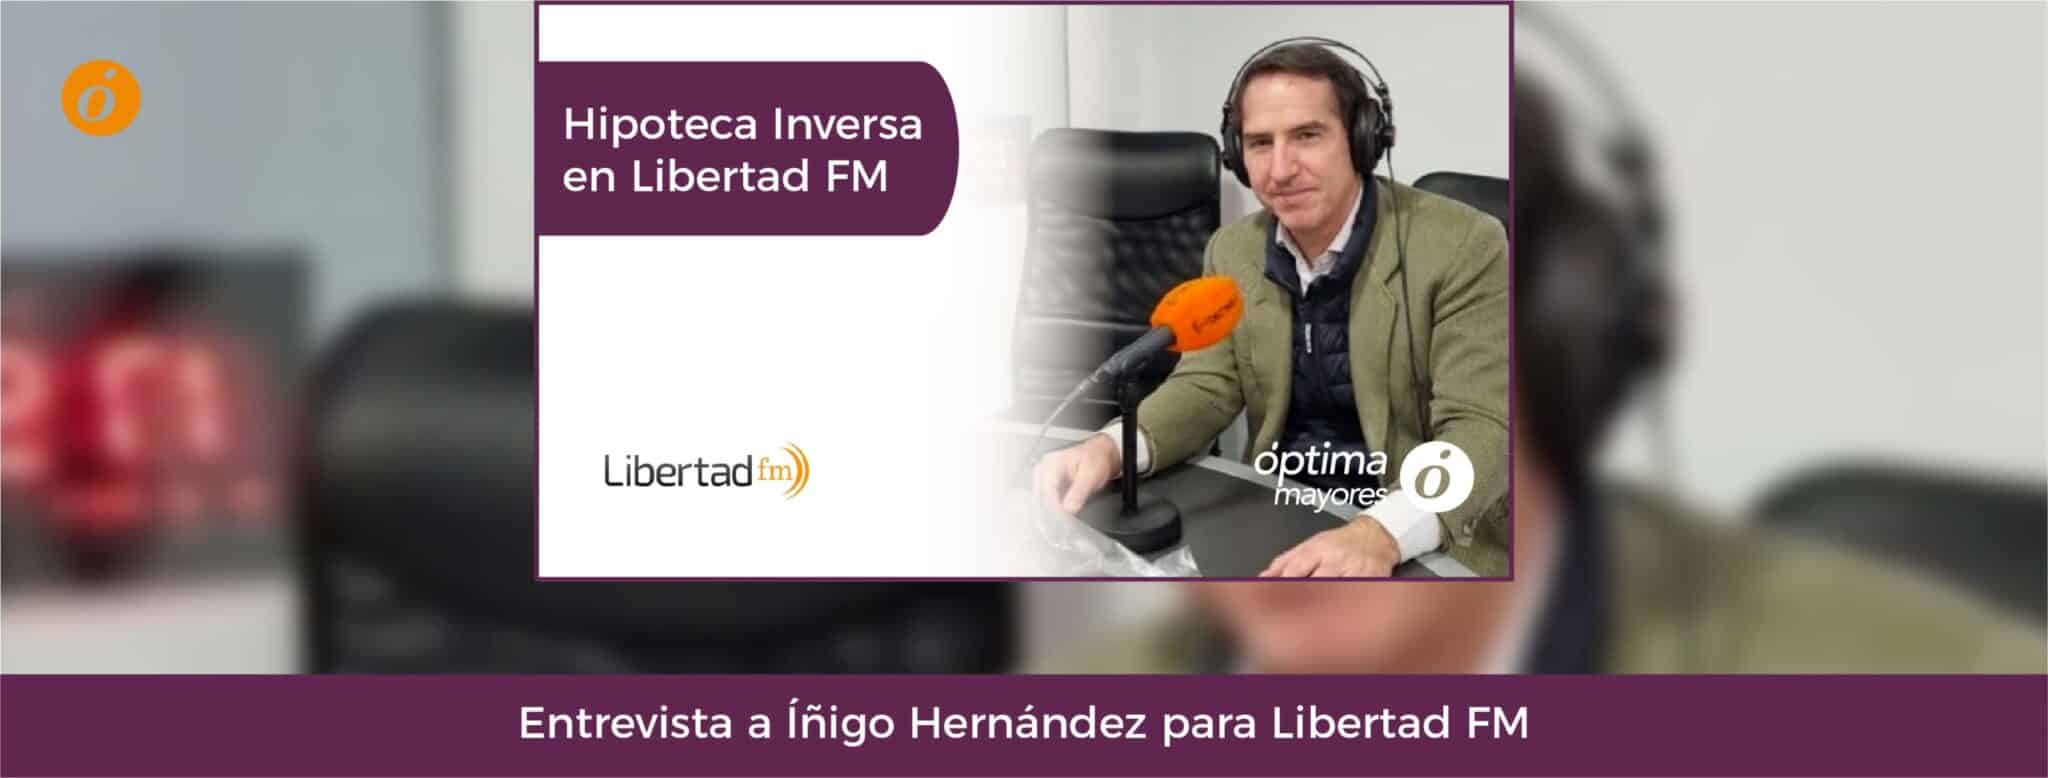 La hipoteca inversa en Libertad FM